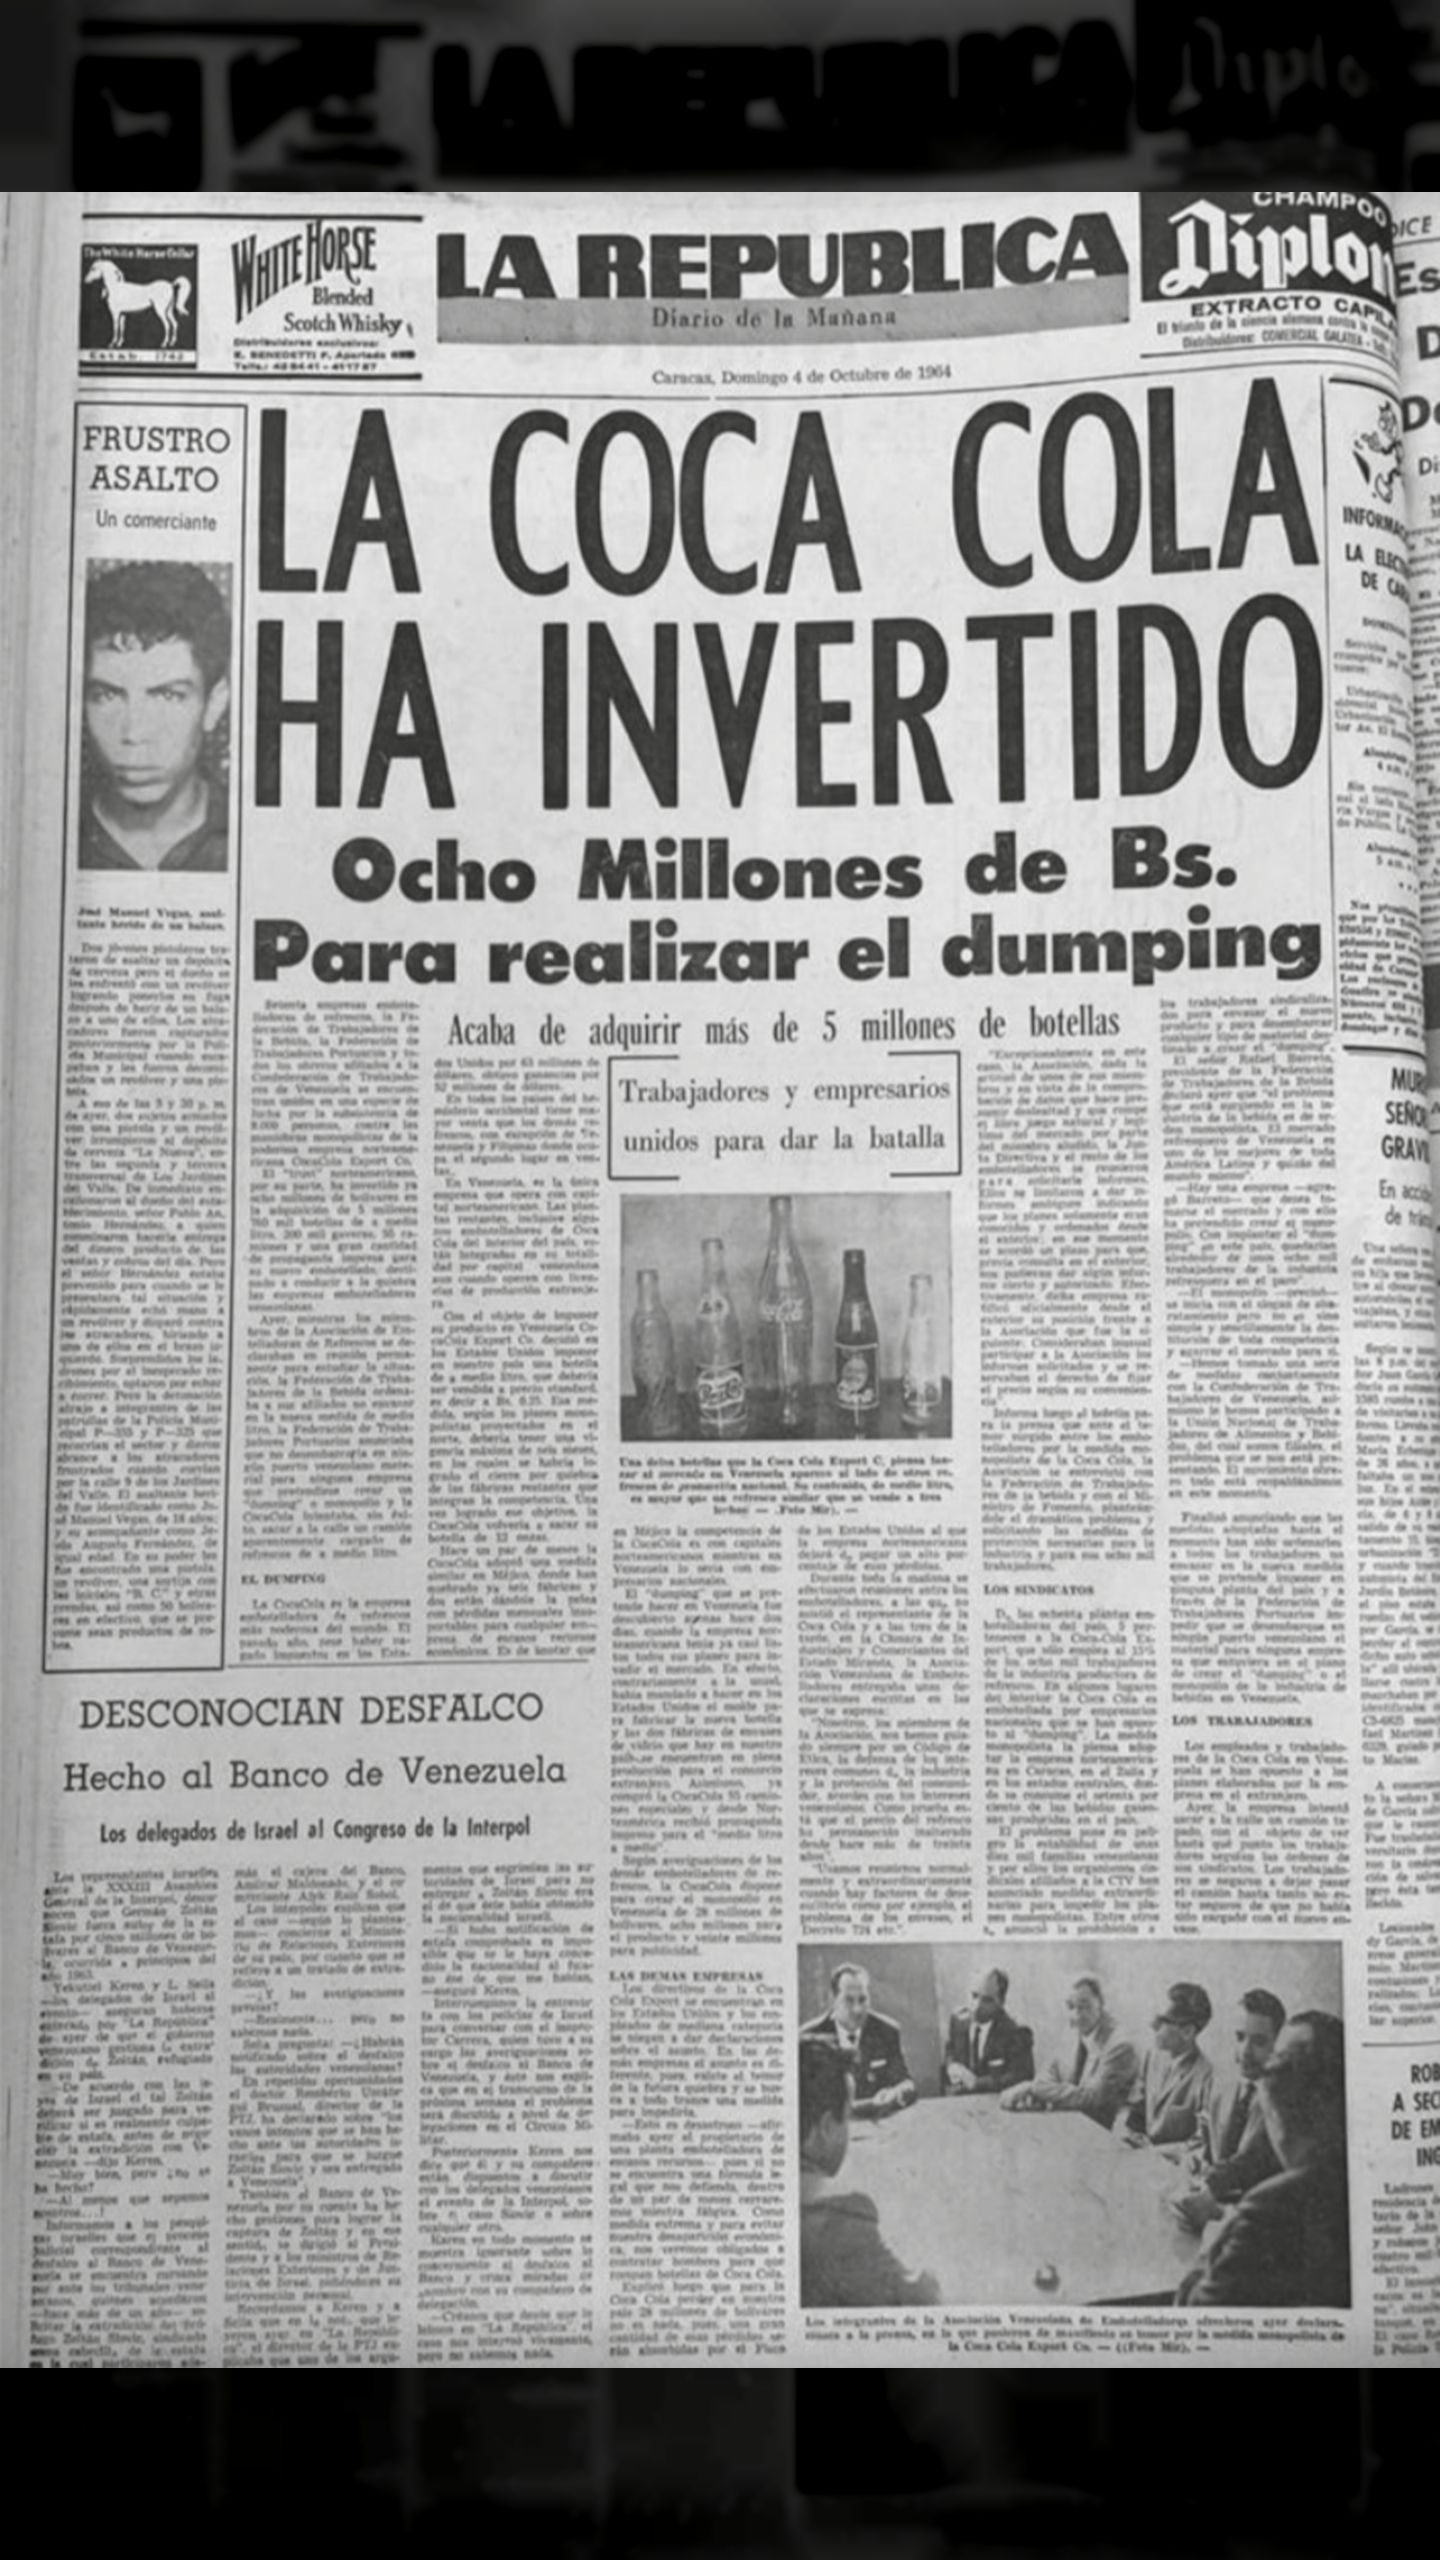 La Coca-Cola ha invertido ocho millones de bolívares para realizar el dumping (La República, 4 de octubre 1964)